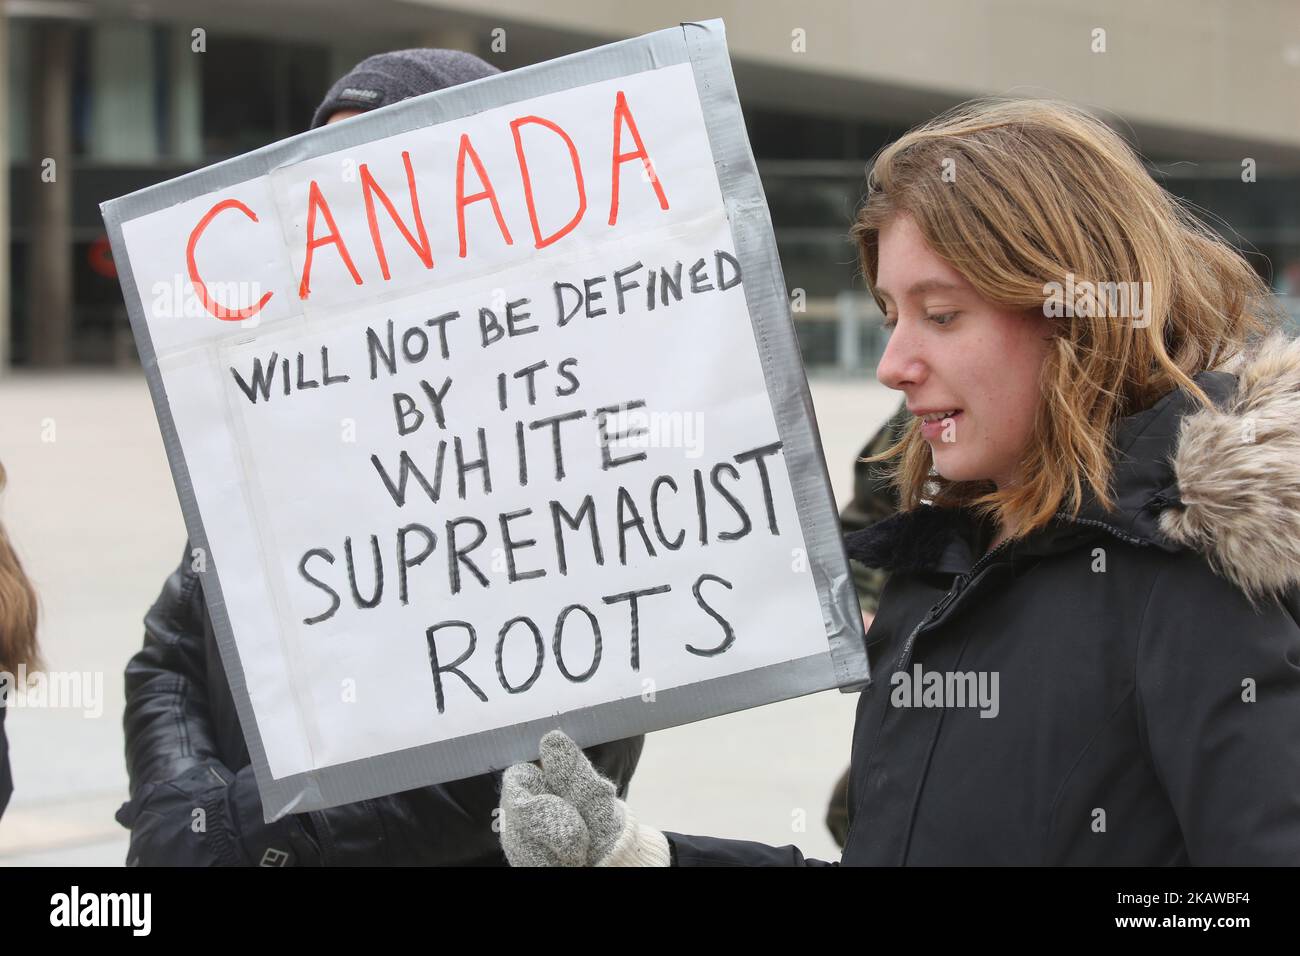 Frau mit einem Schild, das sagte: „Kanada wird nicht durch seine Wurzeln der Weißen Vorherrschaft definiert werden“, während der Kundgebung, die am 27. Januar 2018 in Toronto, Ontario, Kanada, stattfand. Die Kundgebung wurde abgehalten, um an die Menschen zu erinnern, die vor einem Jahr in der Moschee von Québec während eines Todesurteiles getötet wurden, und um Islamophobie, Hass und Rassismus zu verurteilen. Die Kundgebung markiert ein Jahr seit der schrecklichen Tötung von 6 Muslimen im Islamischen Kulturzentrum von Quebec. Im vergangenen Jahr hat es nach der Wahl von Donald Trump und der Unterstützung rechtsextremistischer Po in ganz Nordamerika und Europa einen erheblichen Anstieg von Islamophobie und Hass gegeben Stockfoto